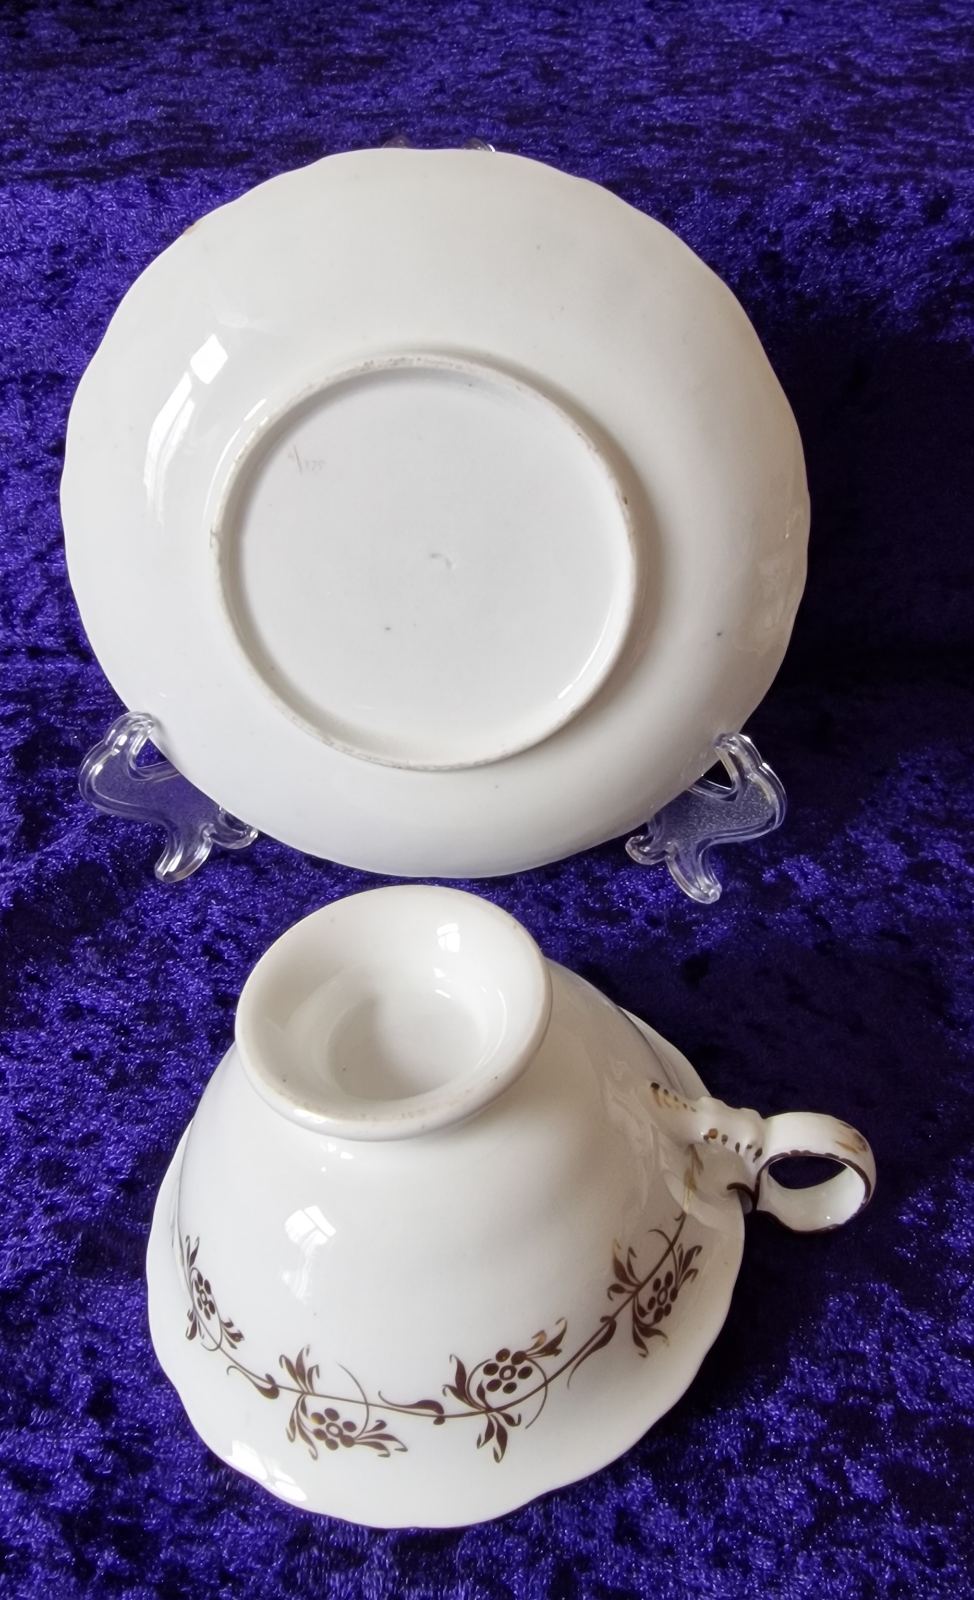 Coalport Adelaide shape tea cup & saucer, c.1840